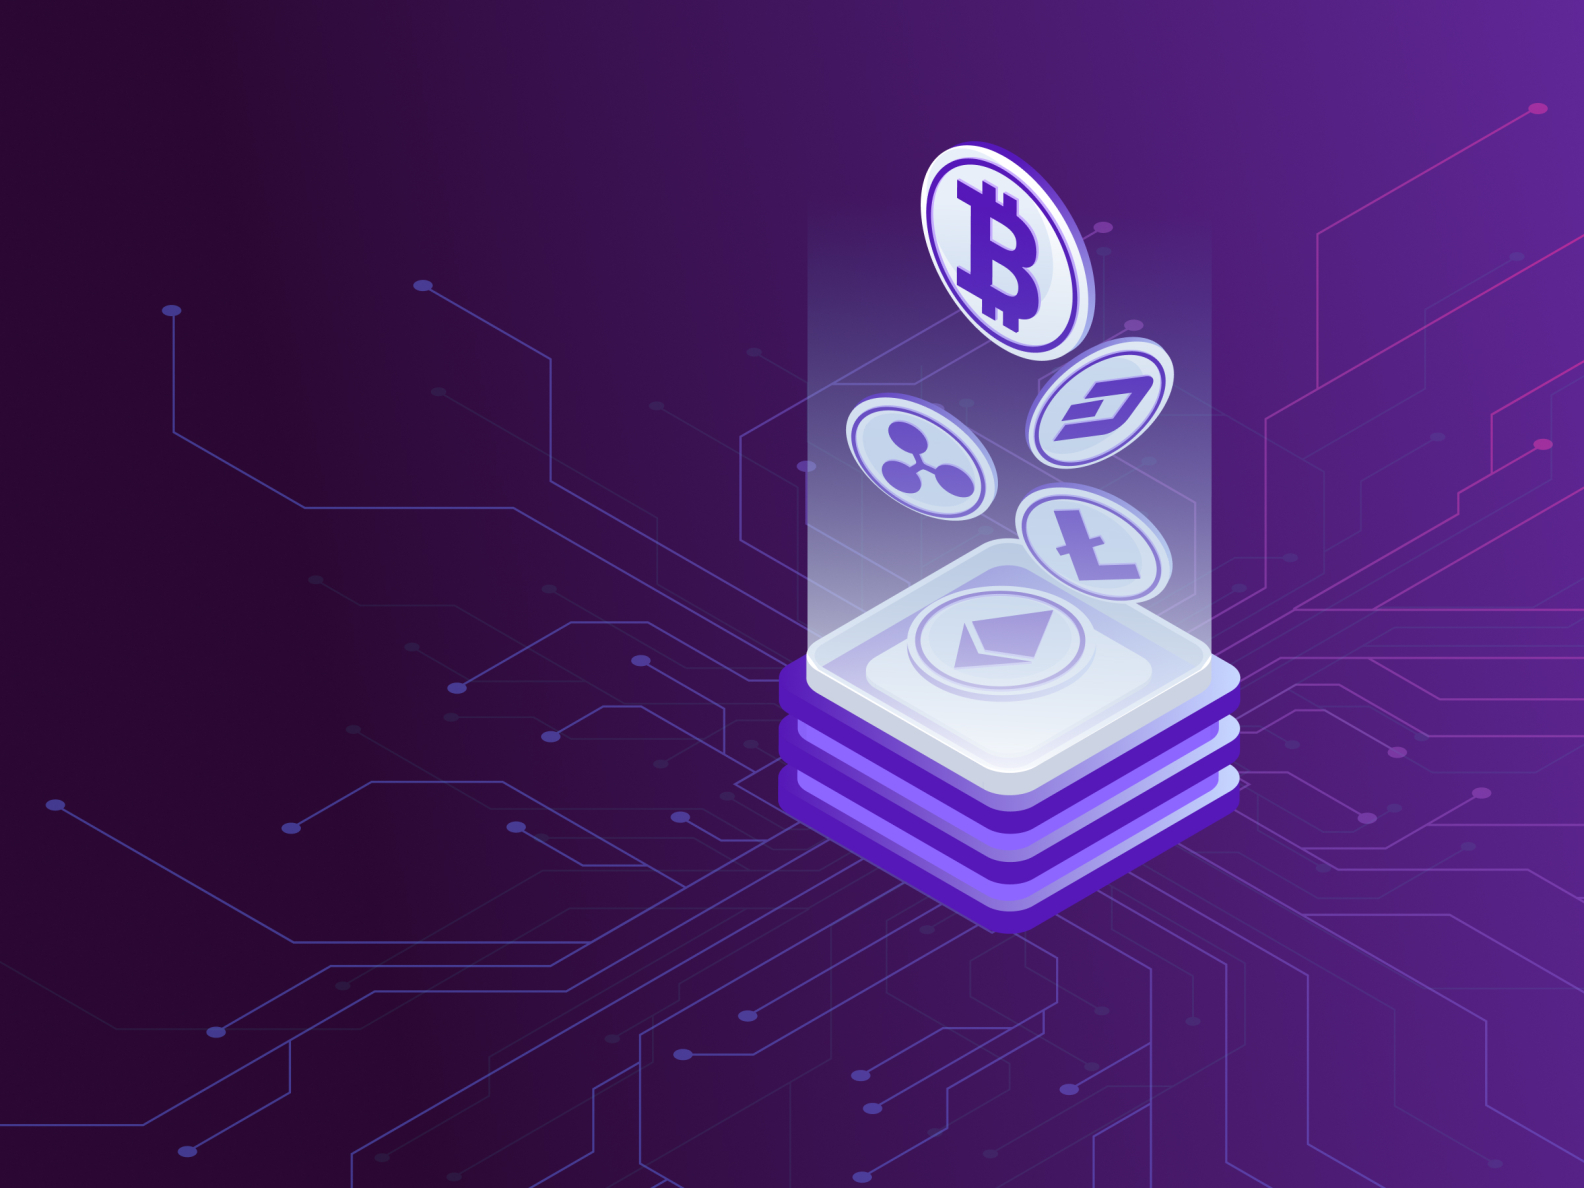 Gaming platform for cryptocurrency van petersen bitcoin